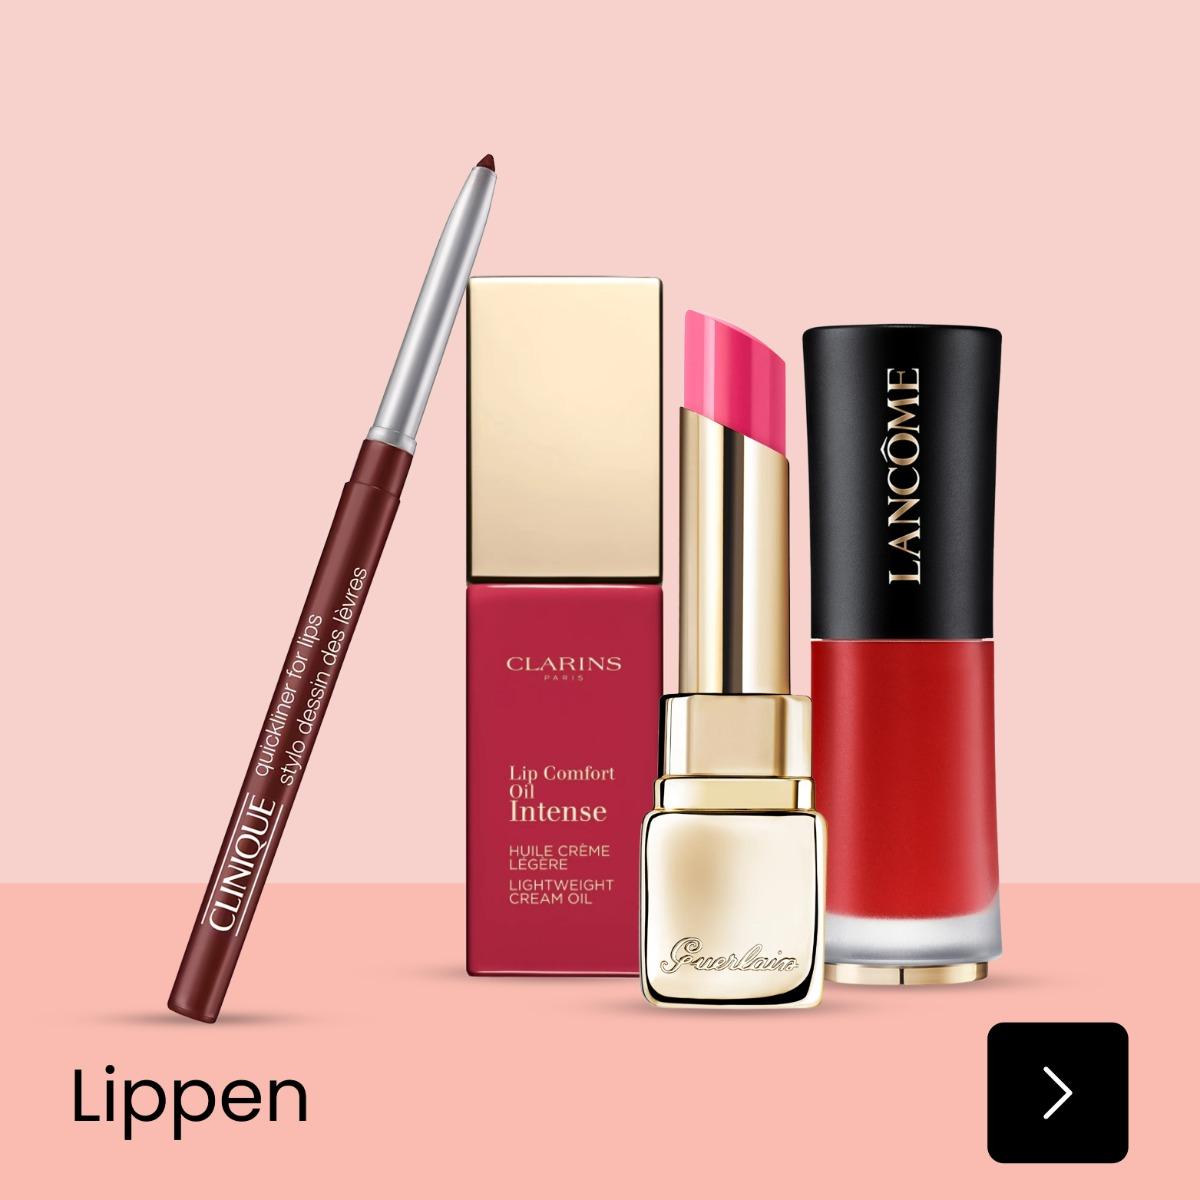 Make-up Lippen assortiment